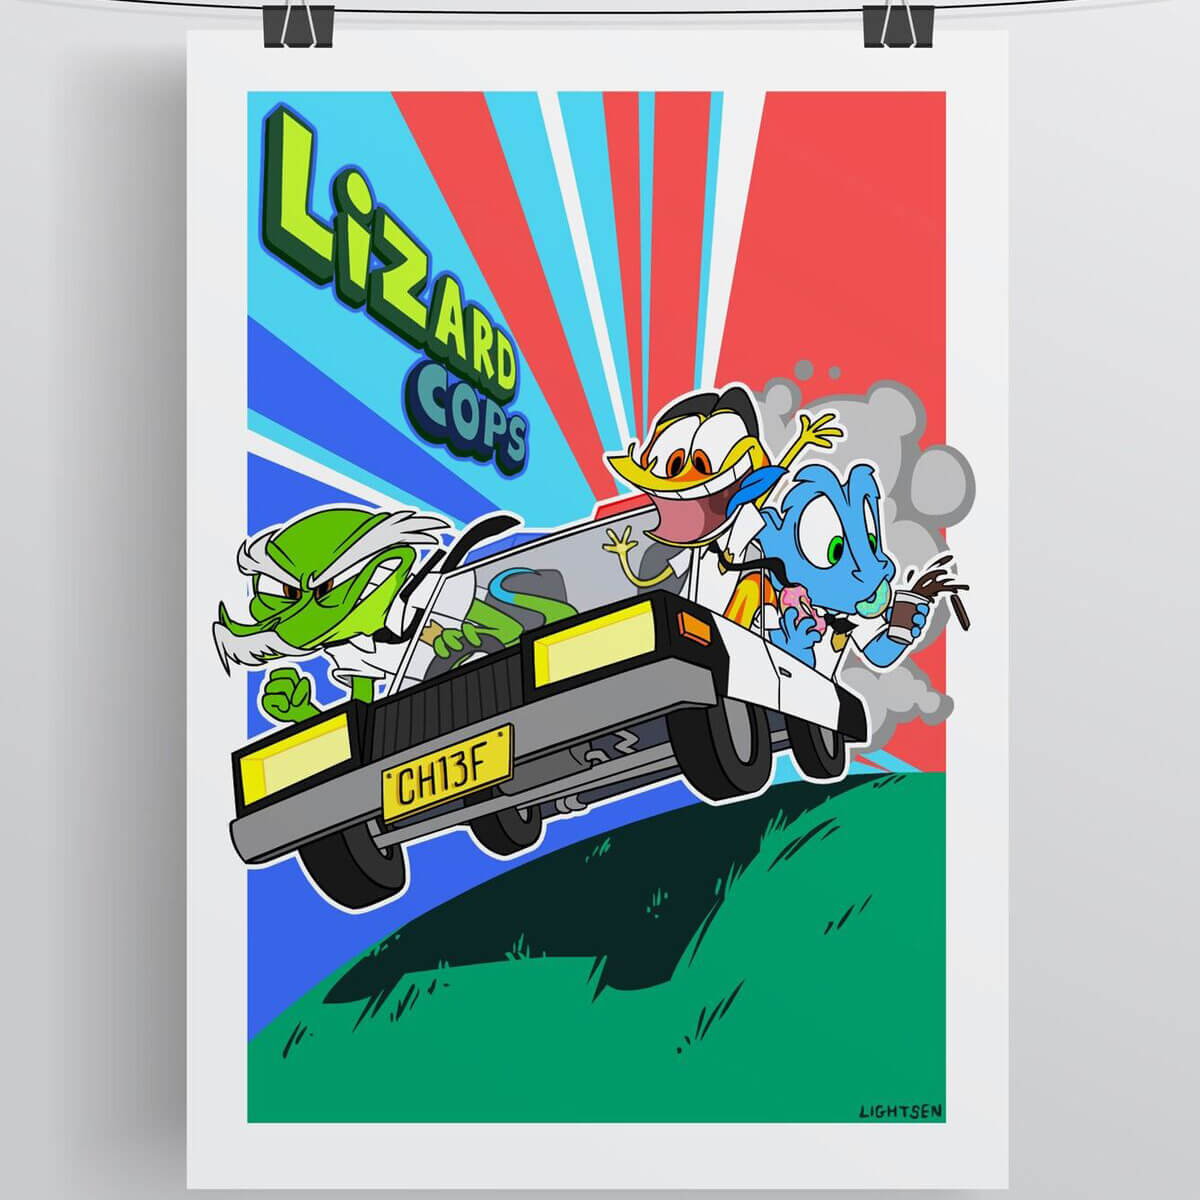 Lizard Cops A4 Poster